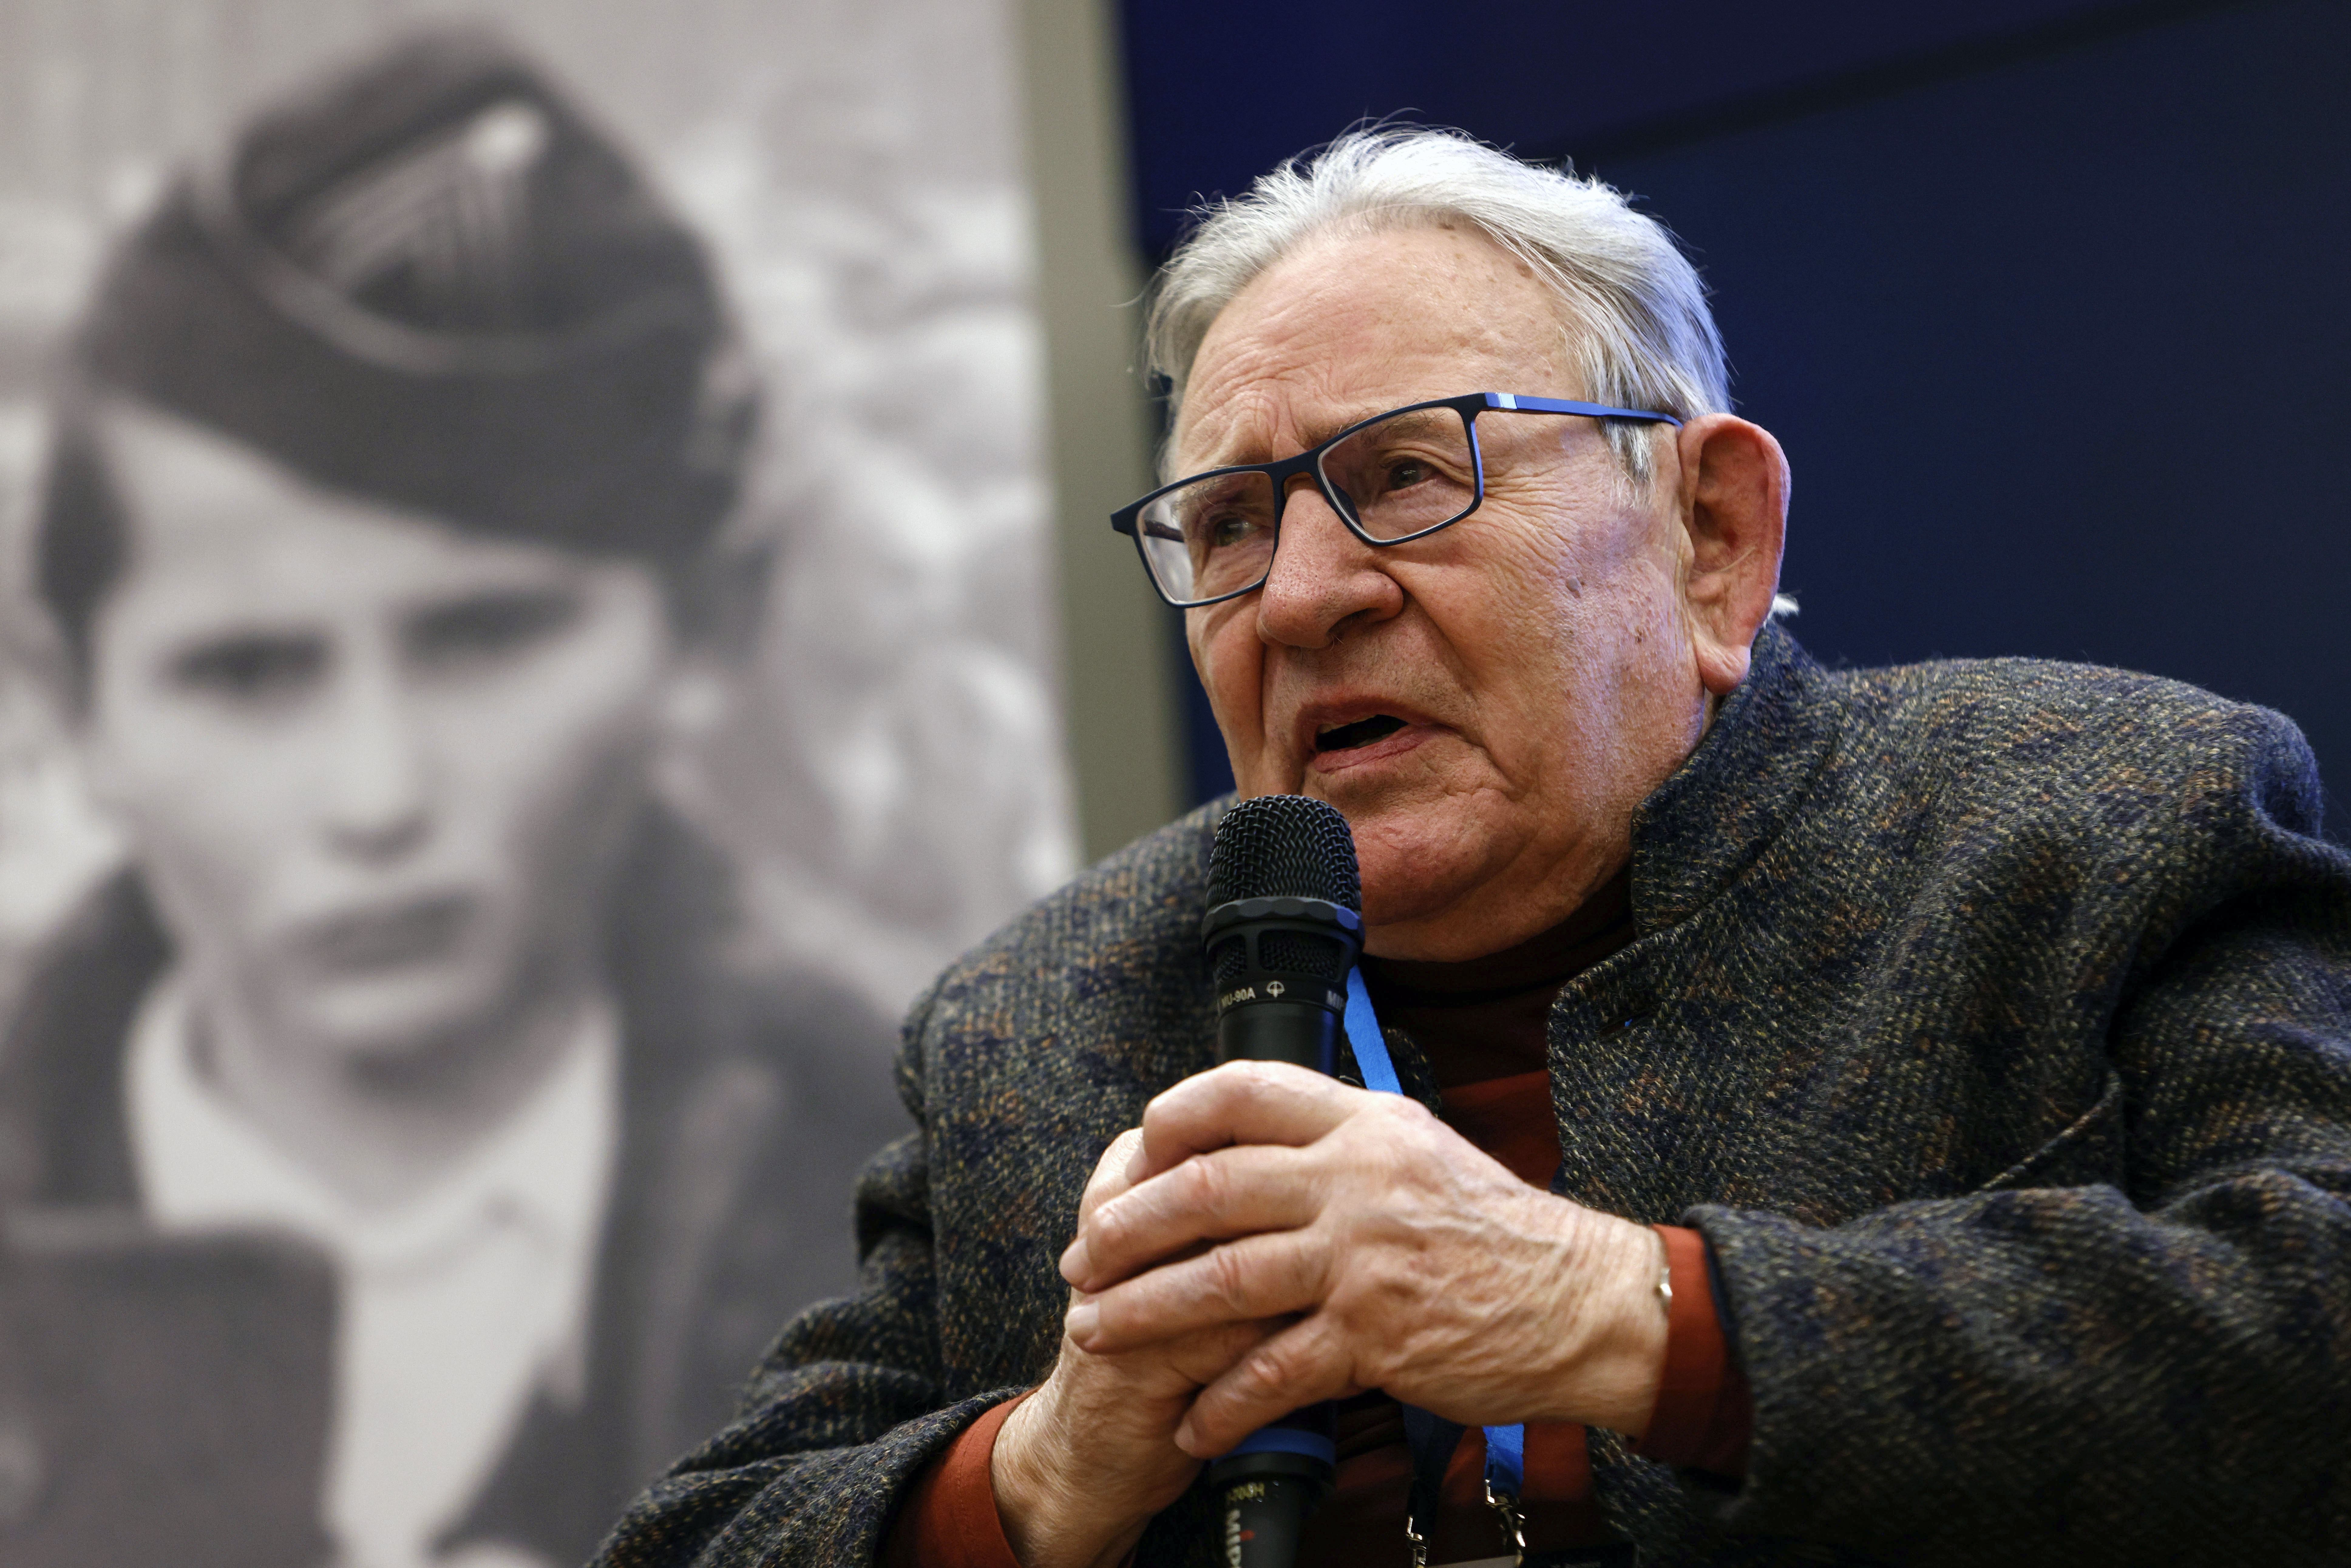 Survivors Mark Anniversary of Auschwitz Liberation With Gathering, Sharing Dark Memories